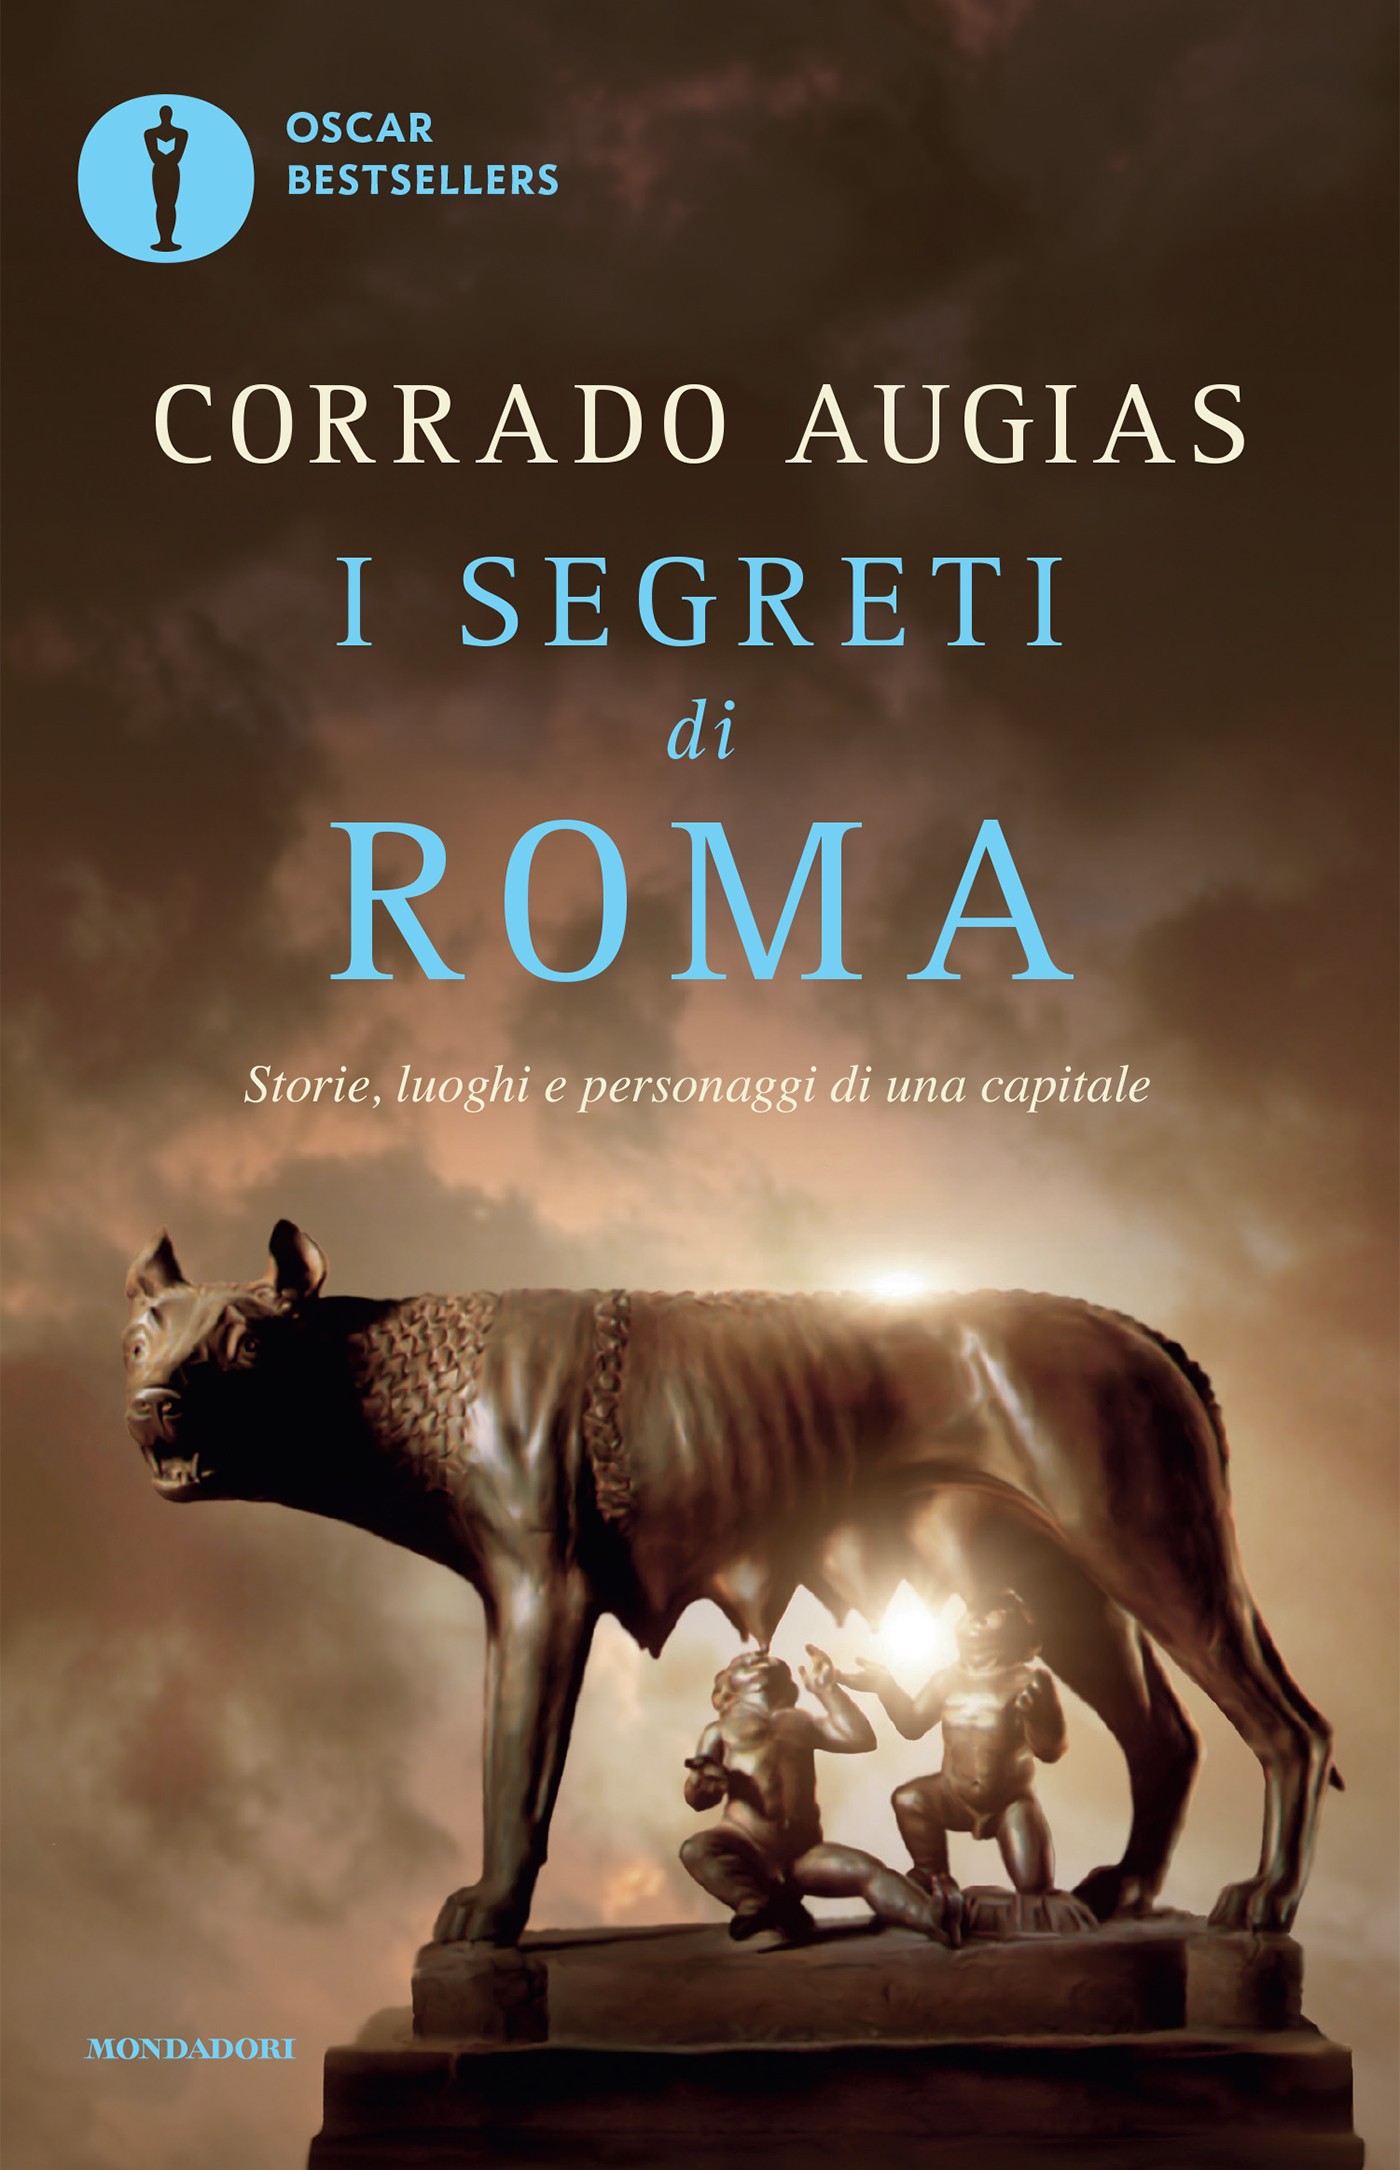 I segreti di Roma - Librerie.coop